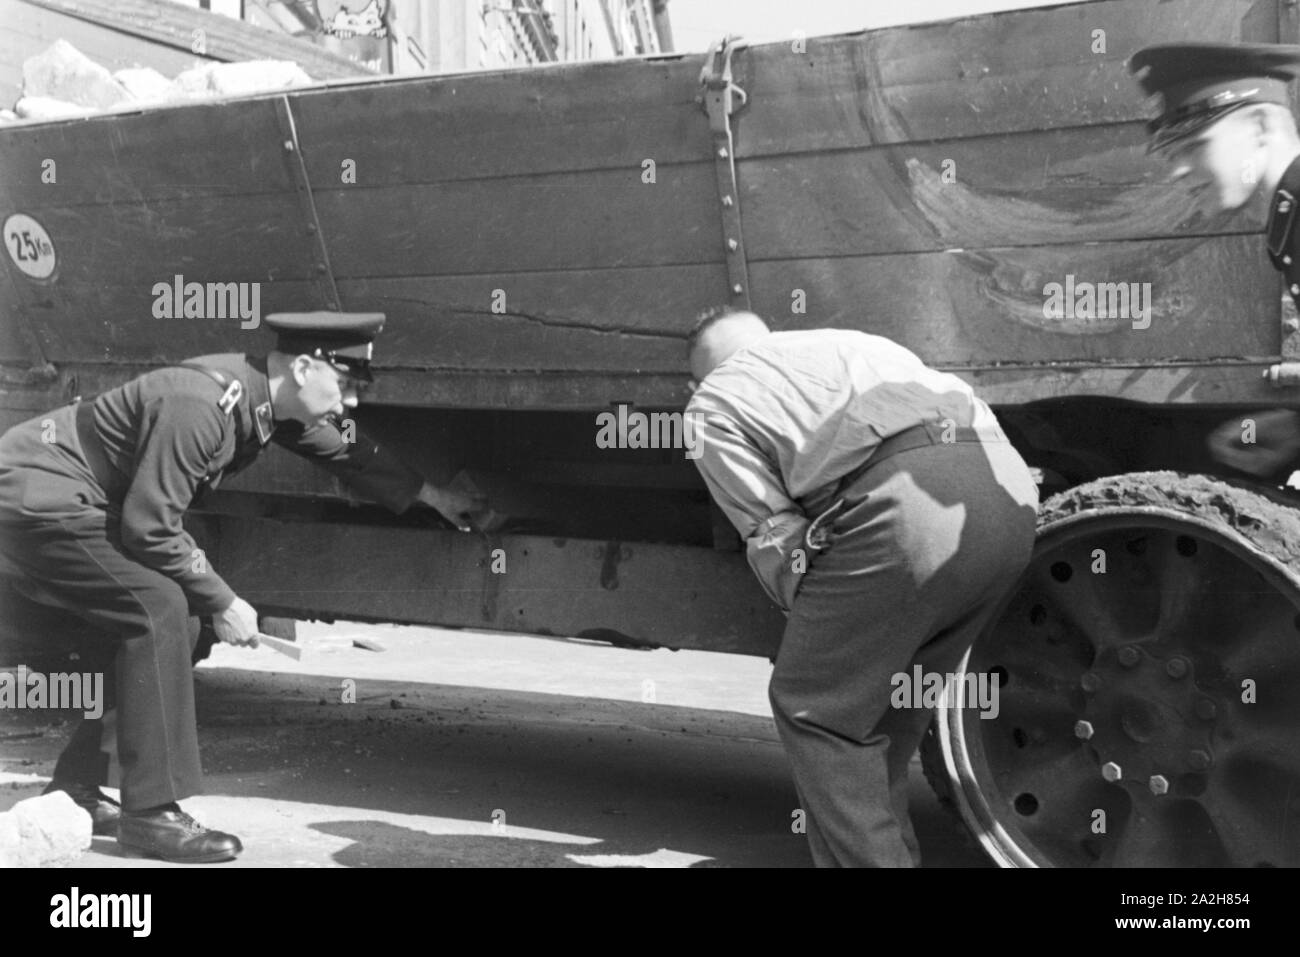 Polizisten rekonstruieren einen Verkehrsunfall, Deutschland 1930er Jahre. Policemen reconstructing a traffic accident, Germany 1930s. Stock Photo